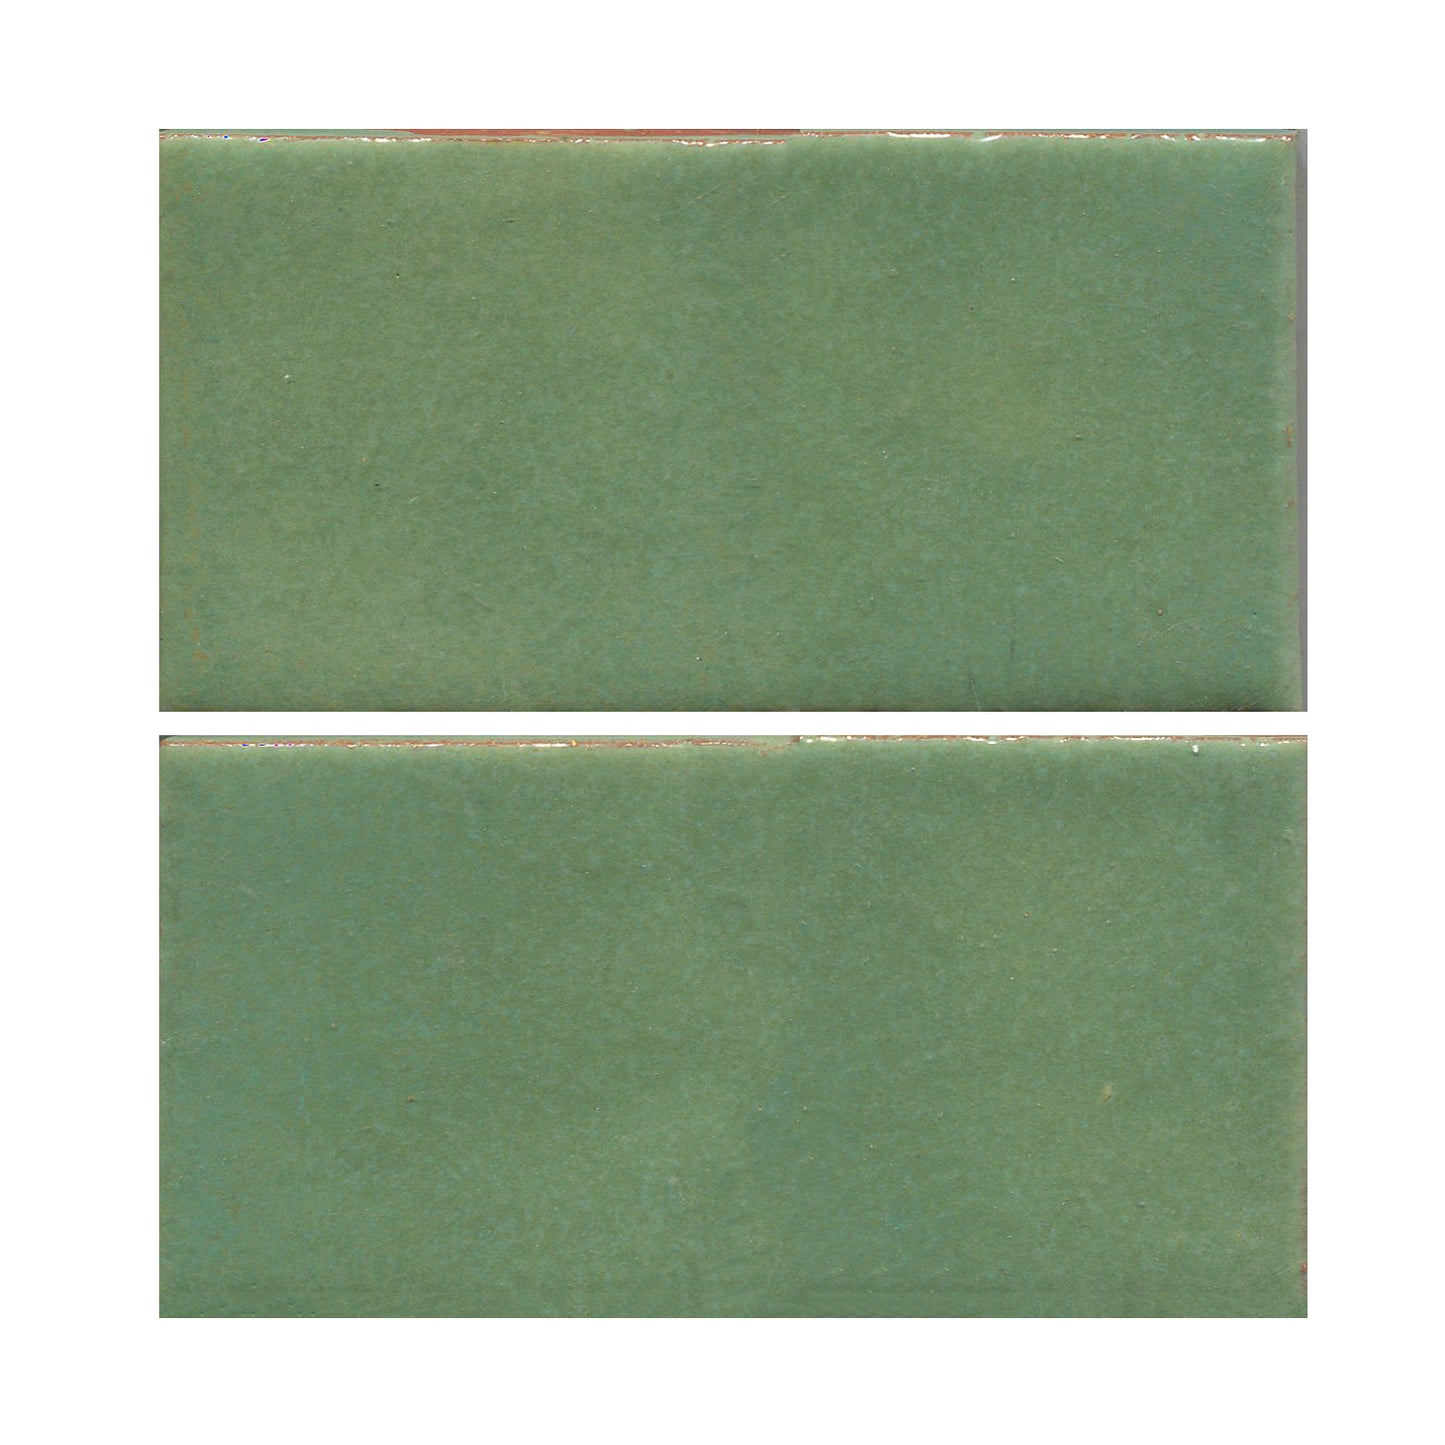 Wasabi green 4x8 field tile